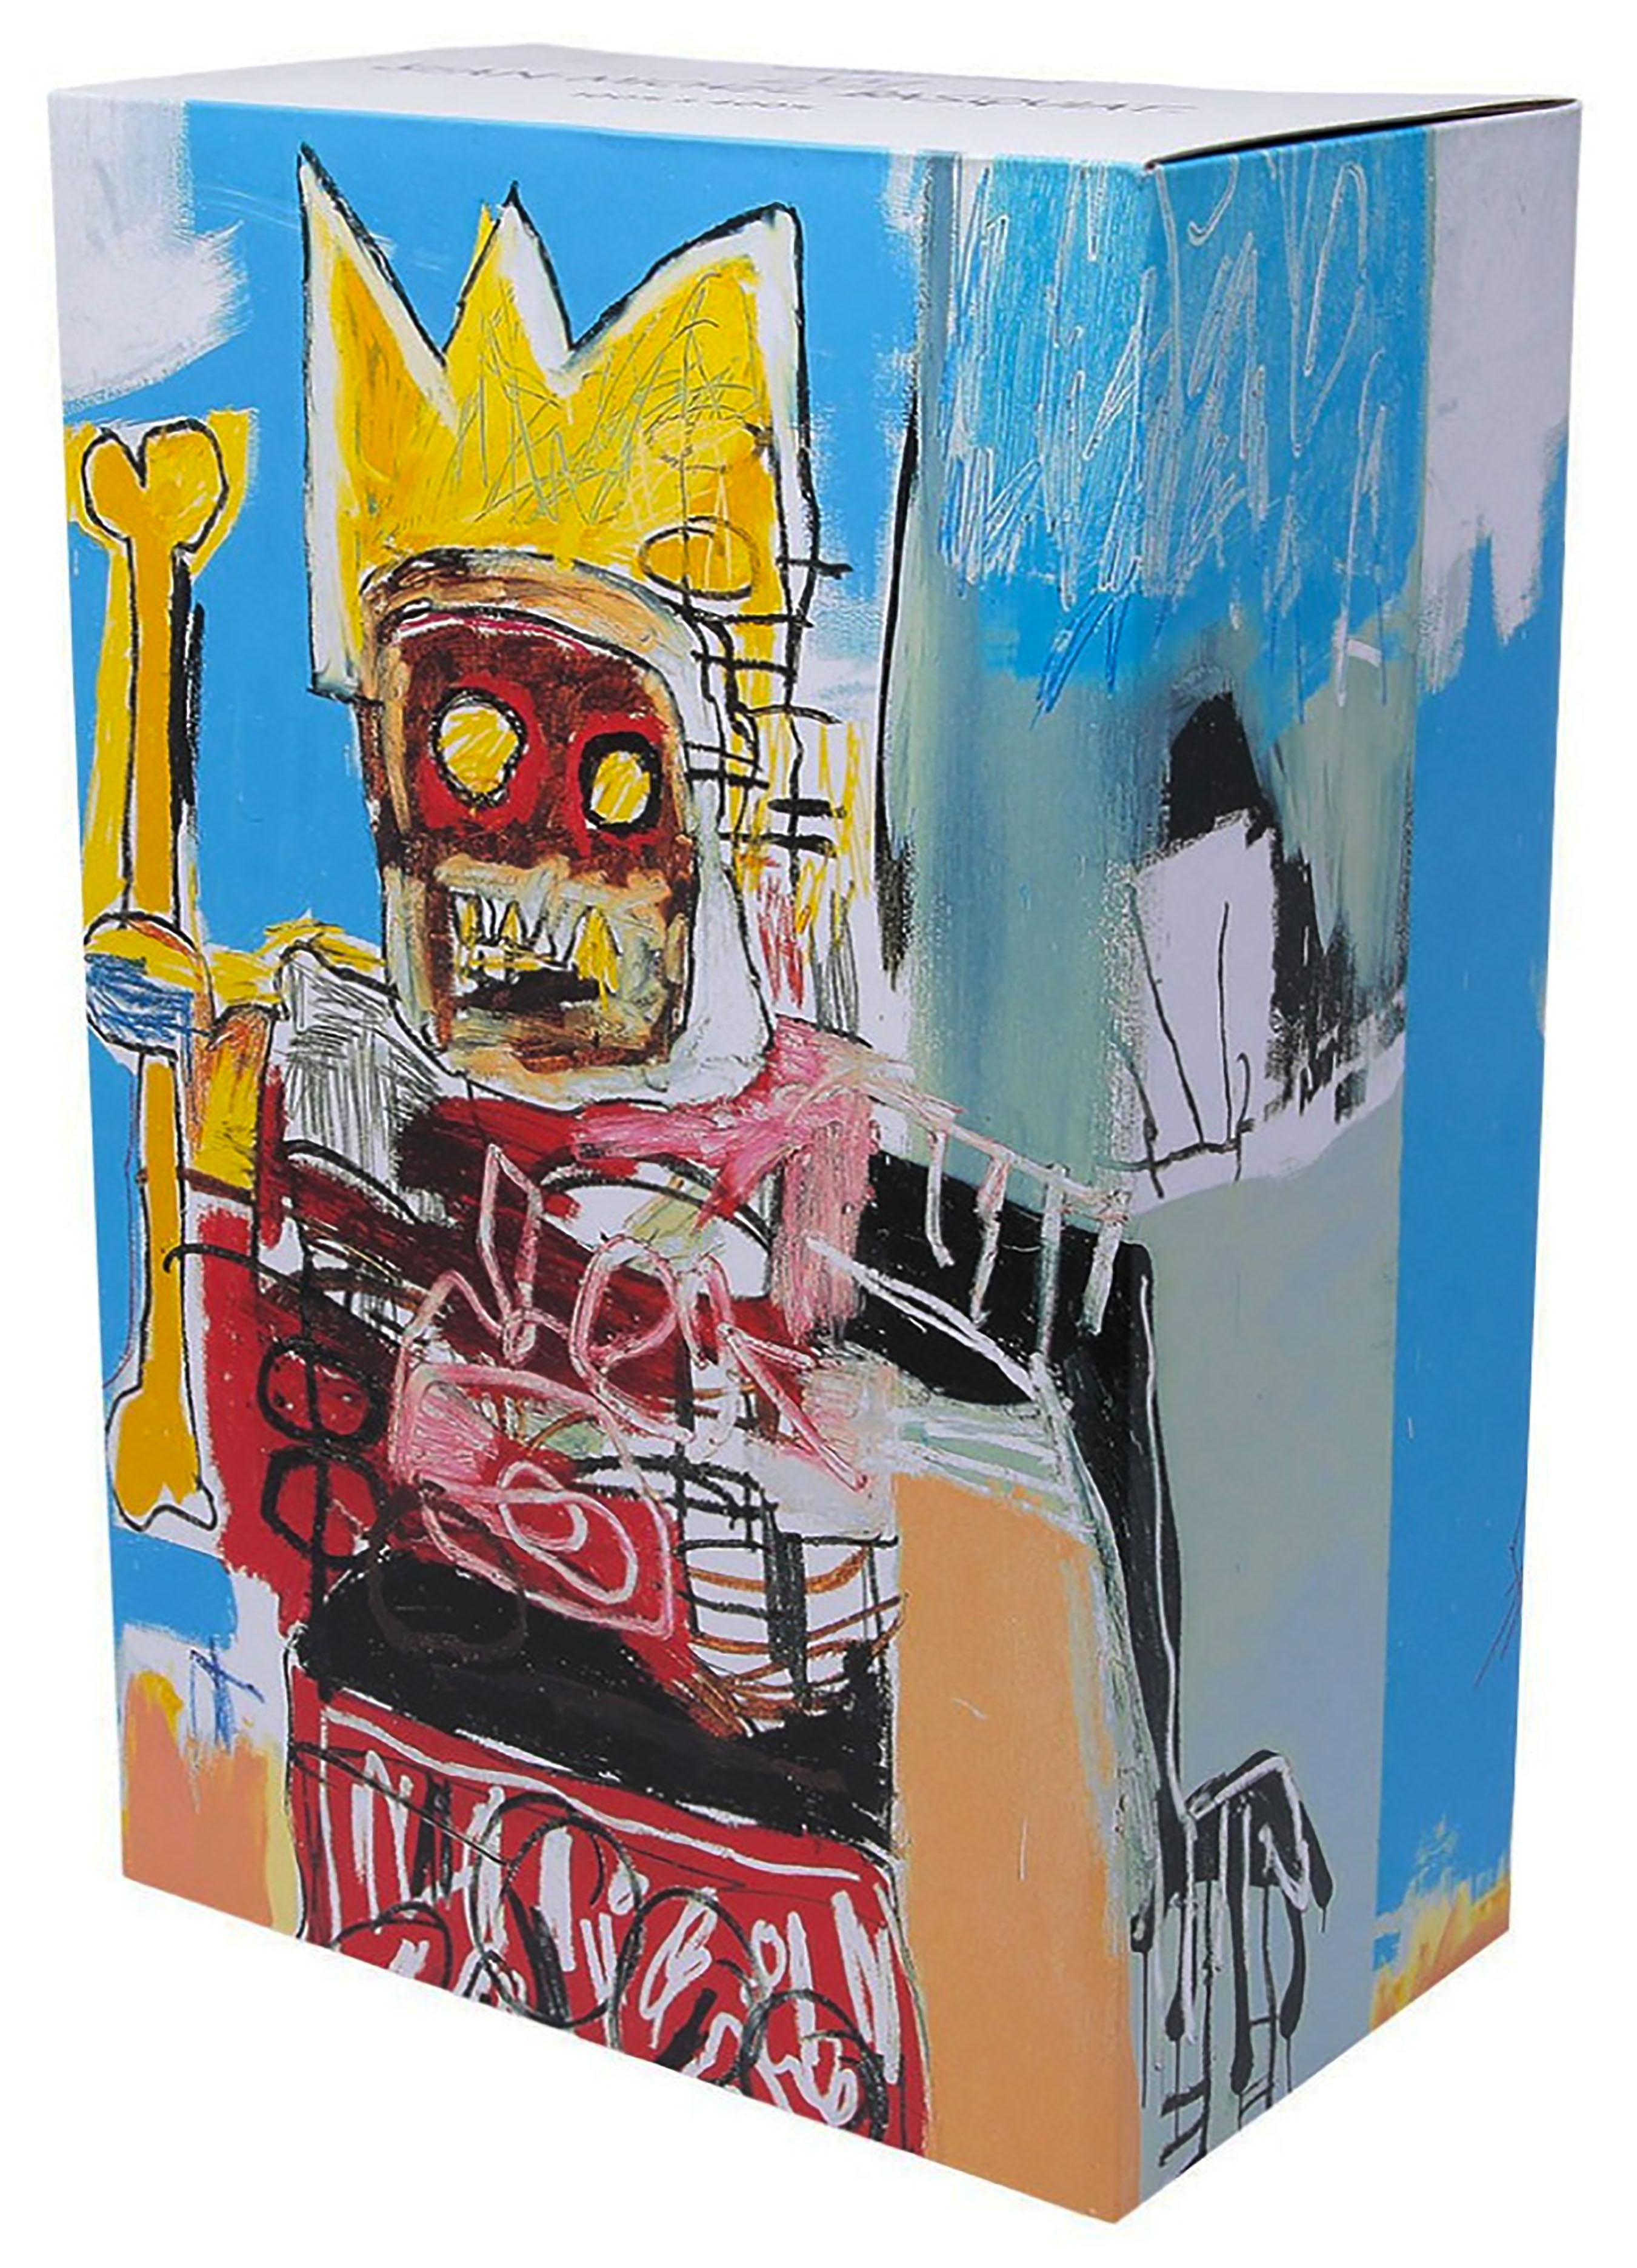 Jean-Michel Basquiat Bearbrick Vinyl Figures (400% & 100%) : Lot de 2 :
Un ensemble unique de statues Basquiat Bearbrick dont la marque et la licence ont été déposées par la succession de Jean-Michel Basquiat. Les objets de collection en partenariat